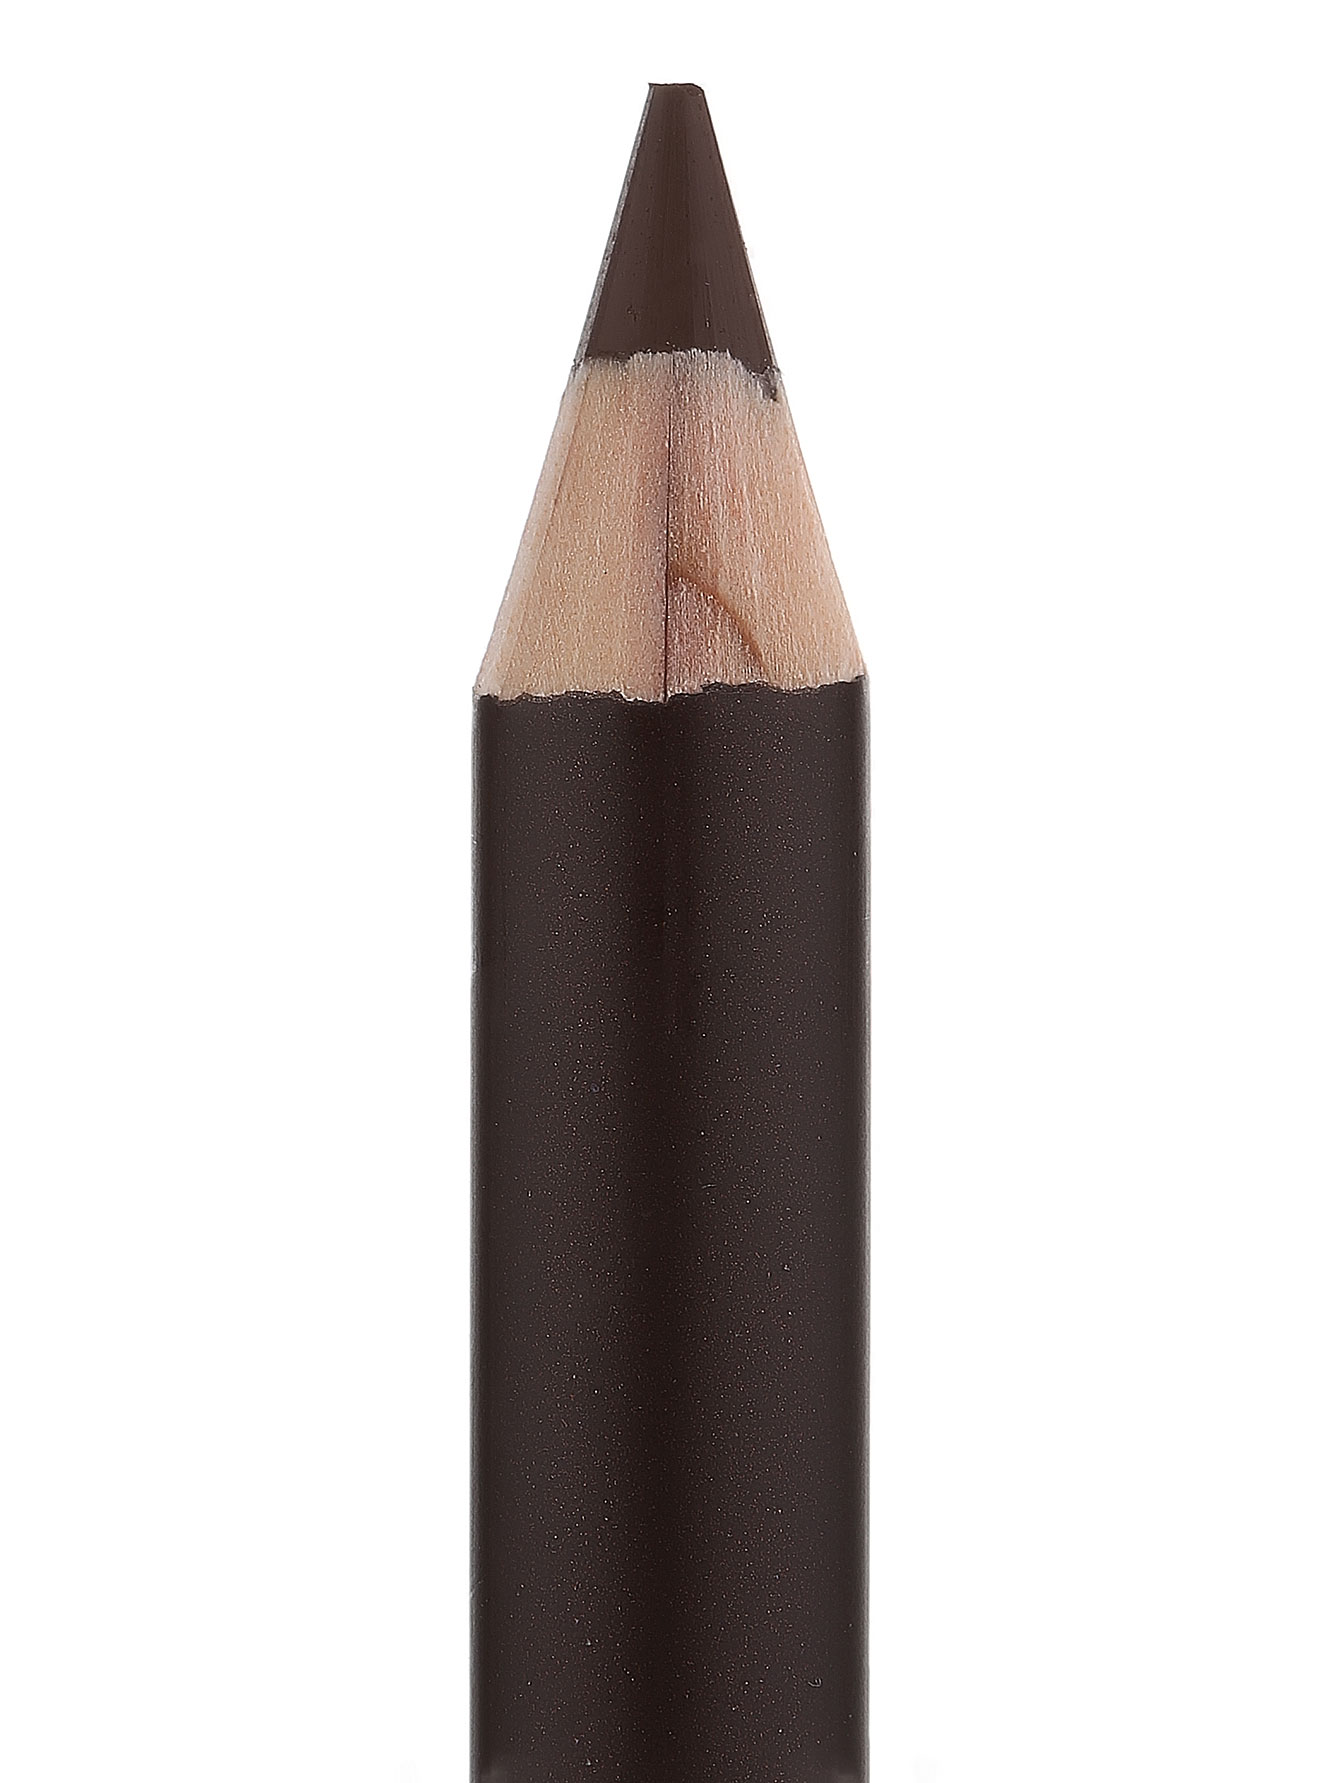 Карандаш для бровей - №2, Eyebrow Pencil - Модель Верх-Низ